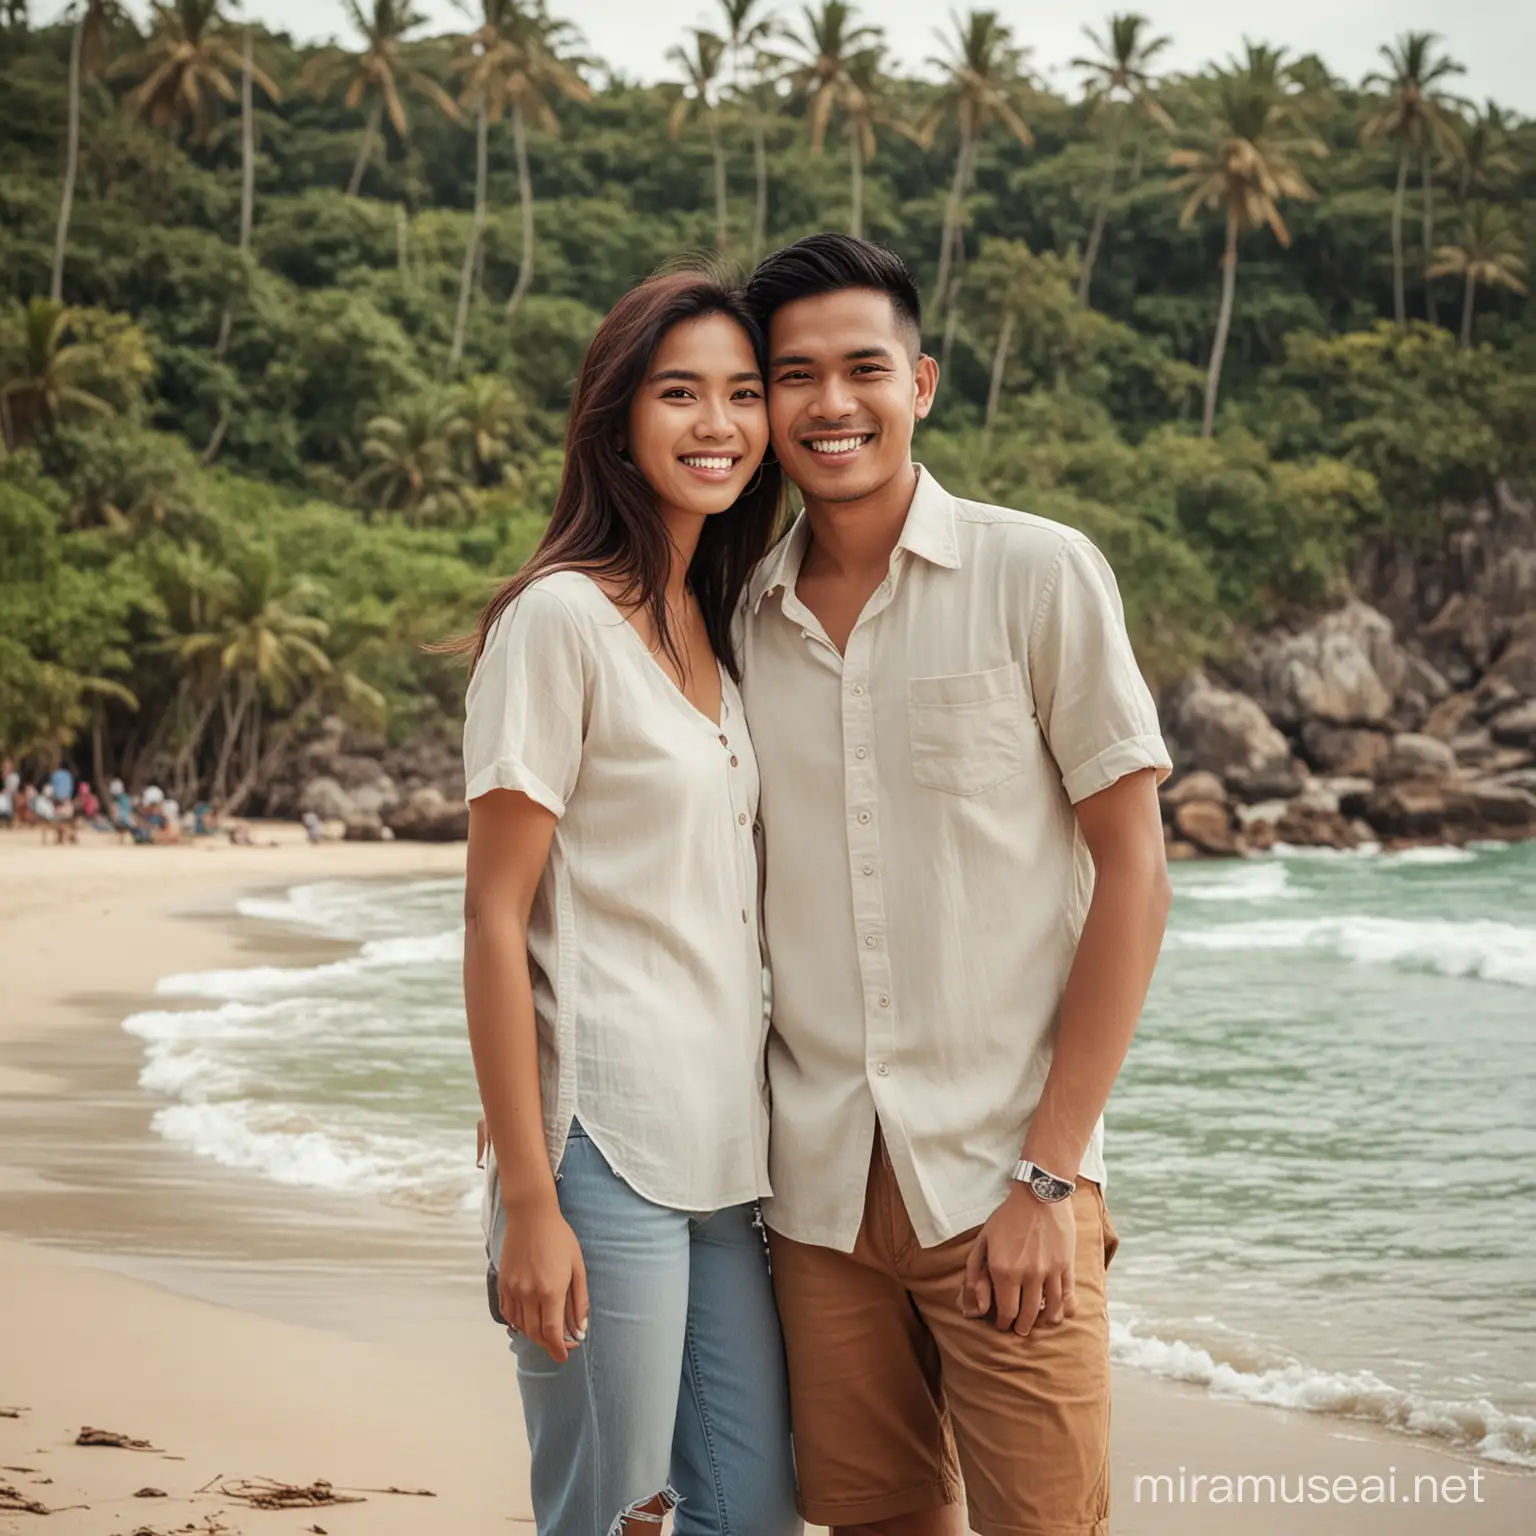 Foto sepasang suami istri asal indonesia.
Berumur 25 tahun
Dengan style kasual modern,sedang berlibur di daerah pesisir pantai yang sangat indah,
Latar pantai
Efek full body,dengan wajah tersenyum